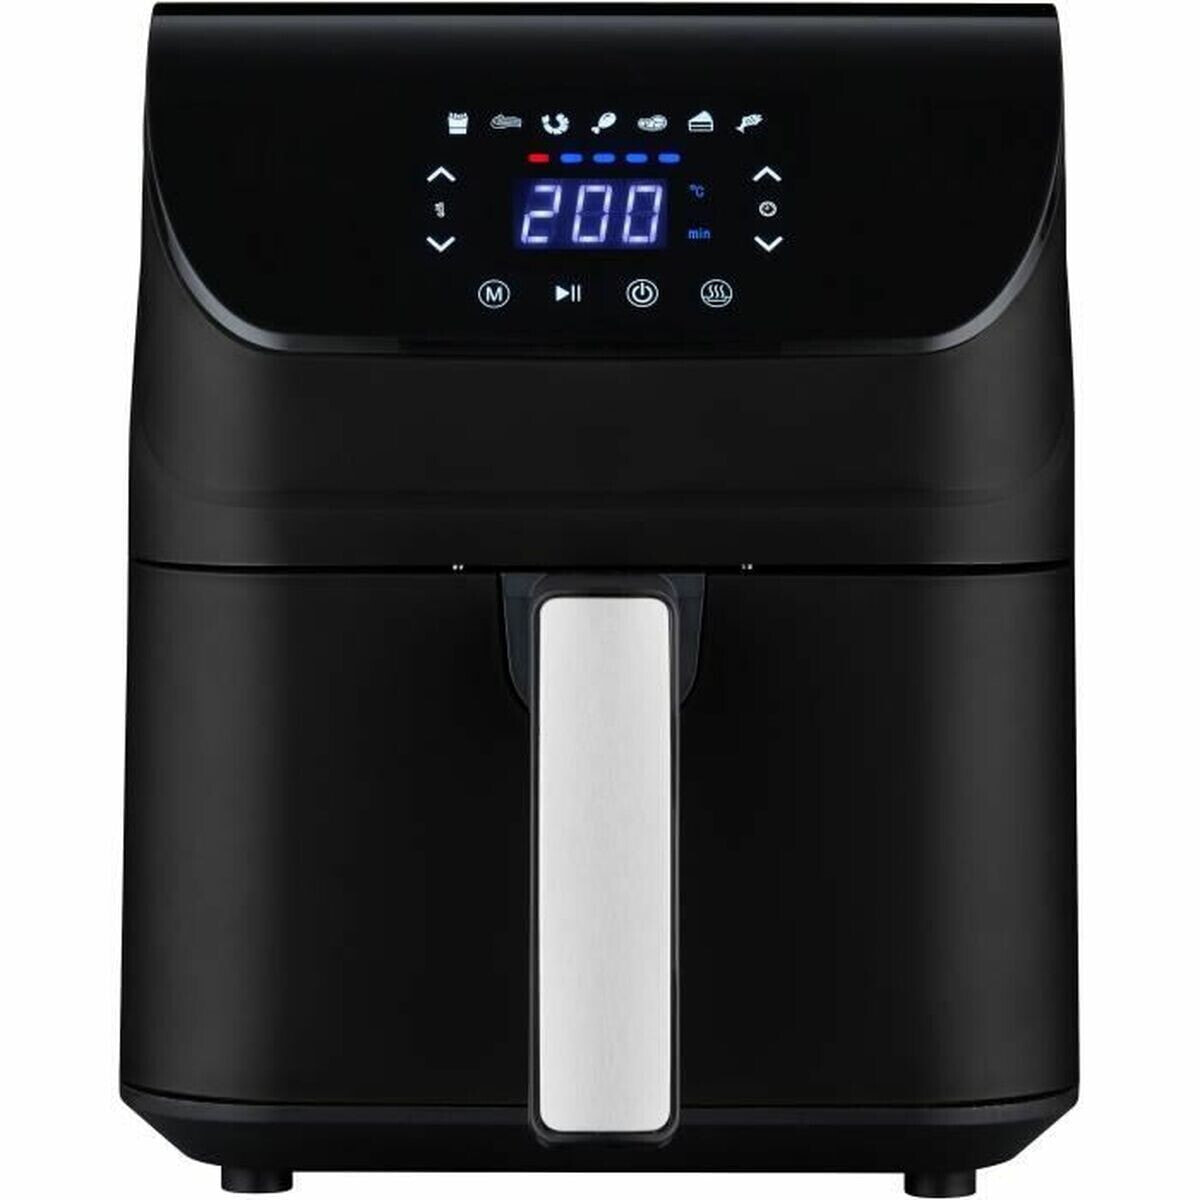 No-Oil Fryer Fagor Black 1350 W 4,3 L